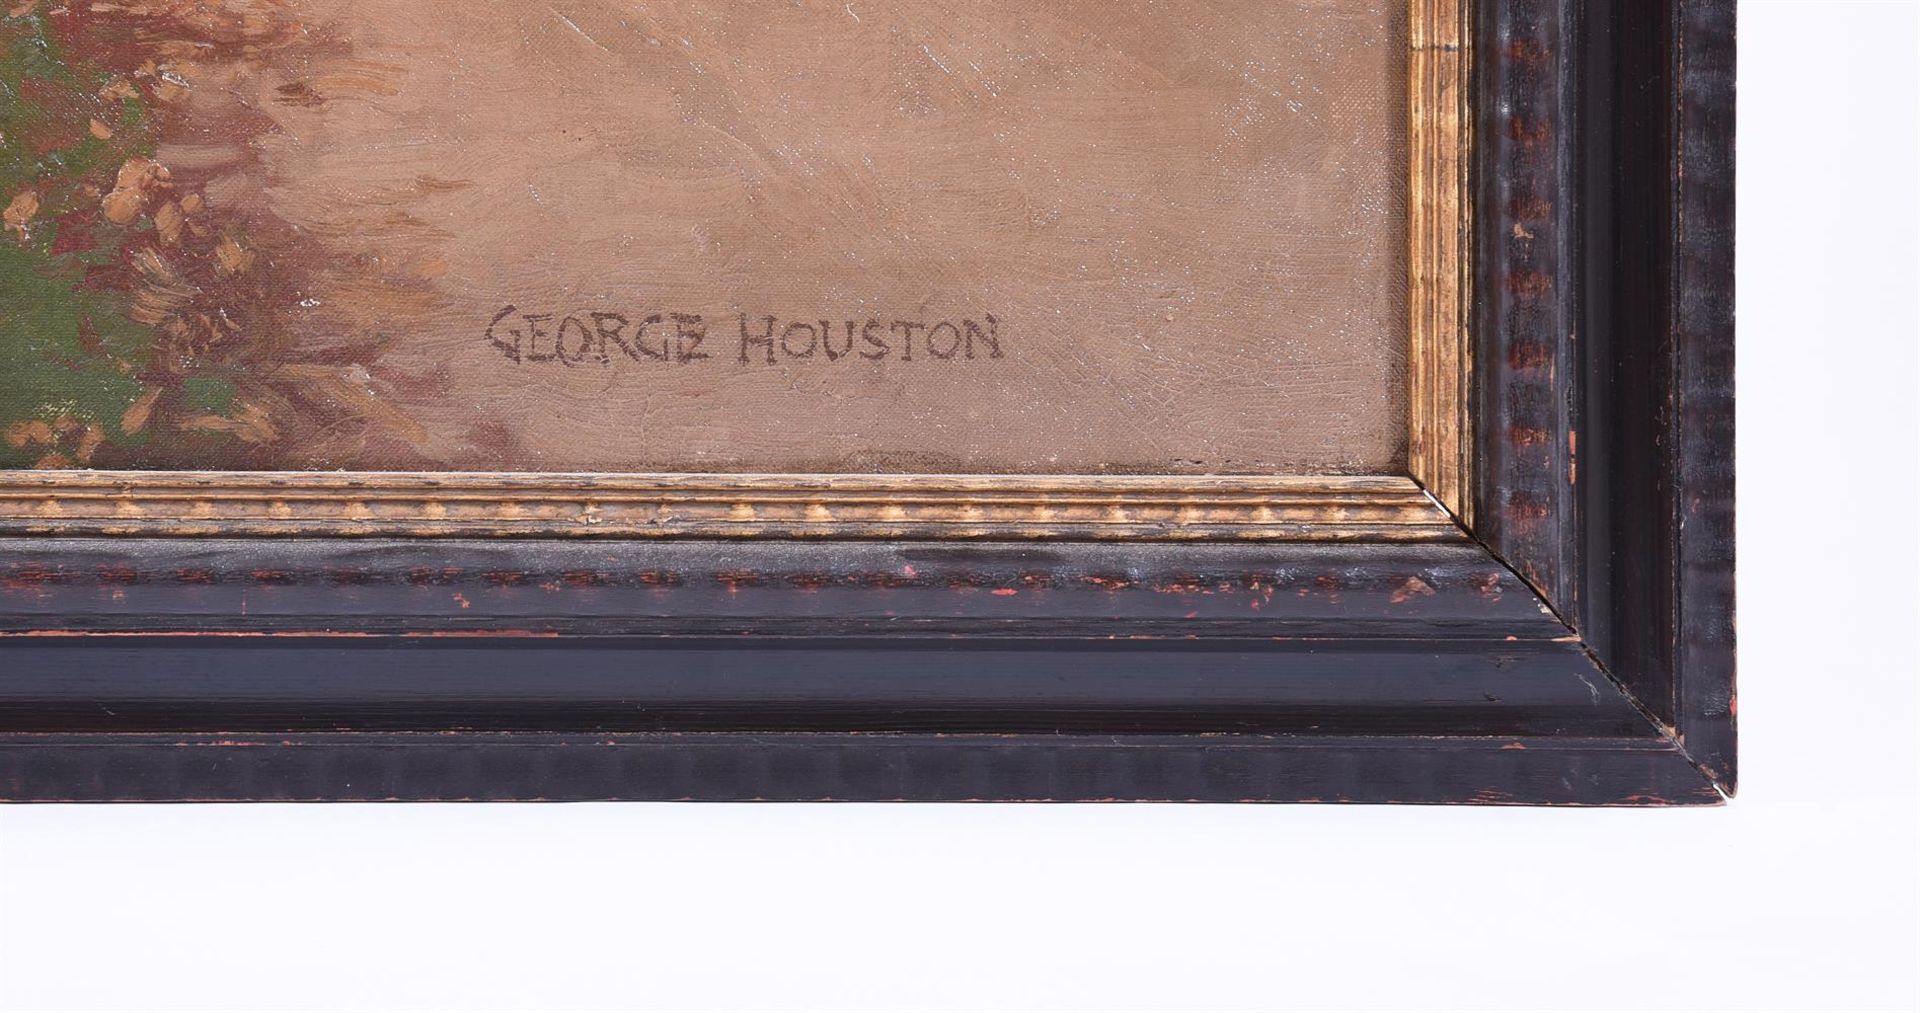 GEORGE HOUSTON (SCOTTISH 1869-1947), THE VILLAGE POSTMAN - Bild 4 aus 5